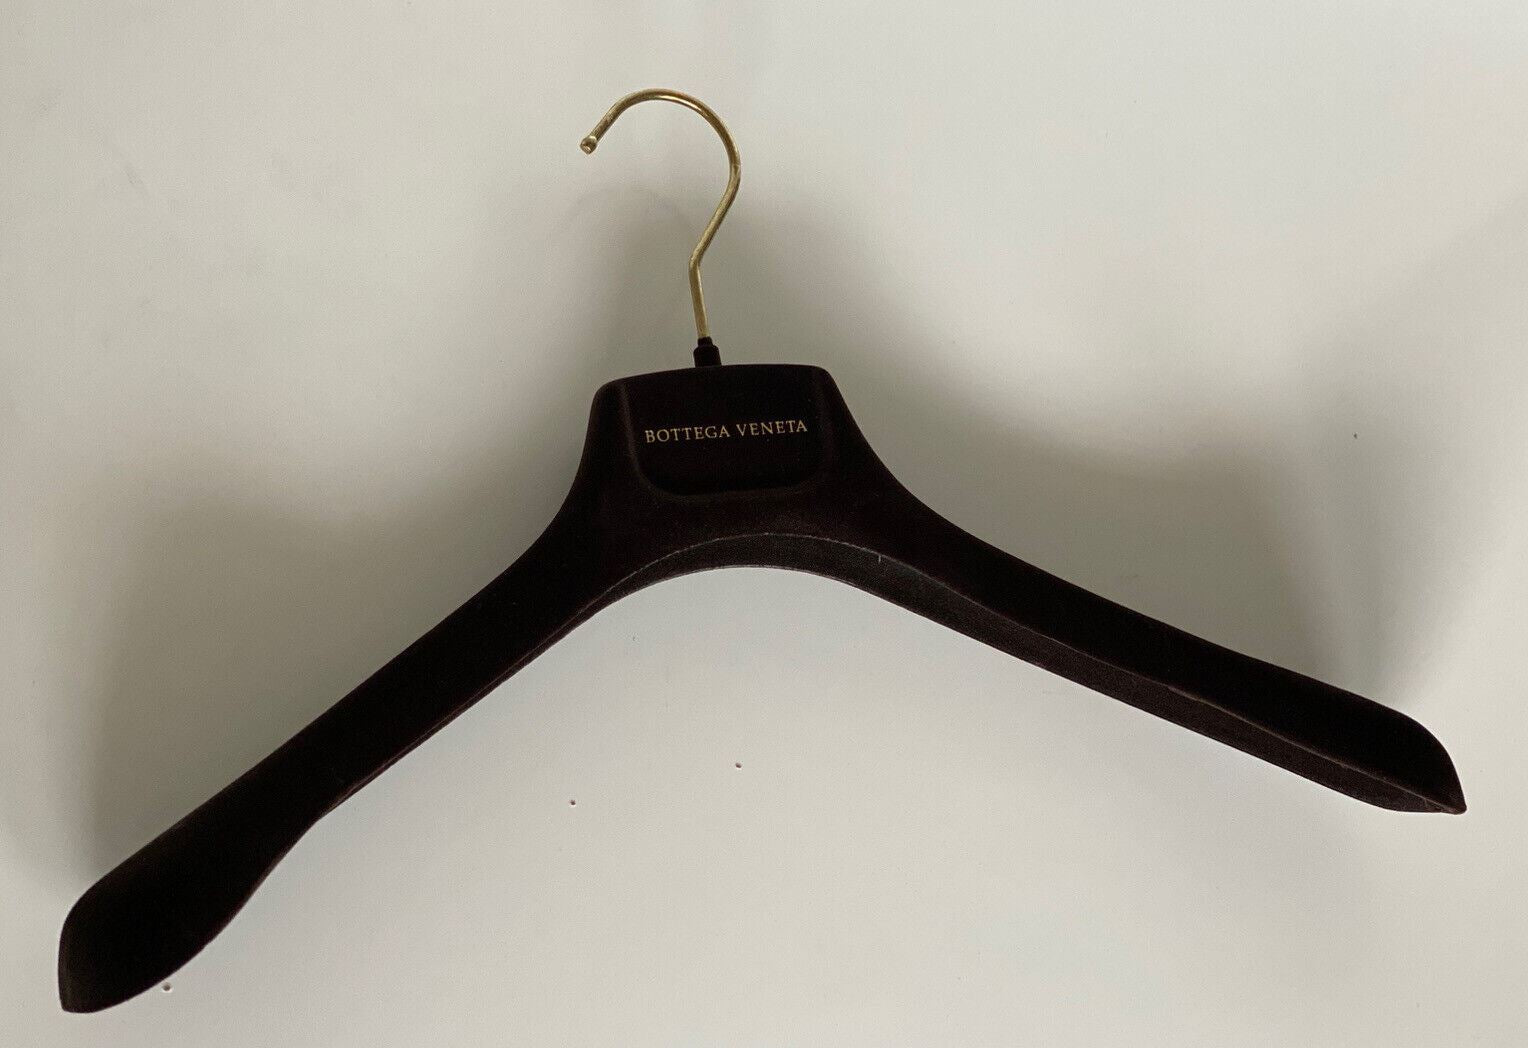 Bottega Veneta Brown Velvet Blazer Sweater Hangers with Gold Hardware 15.6x7x2.5